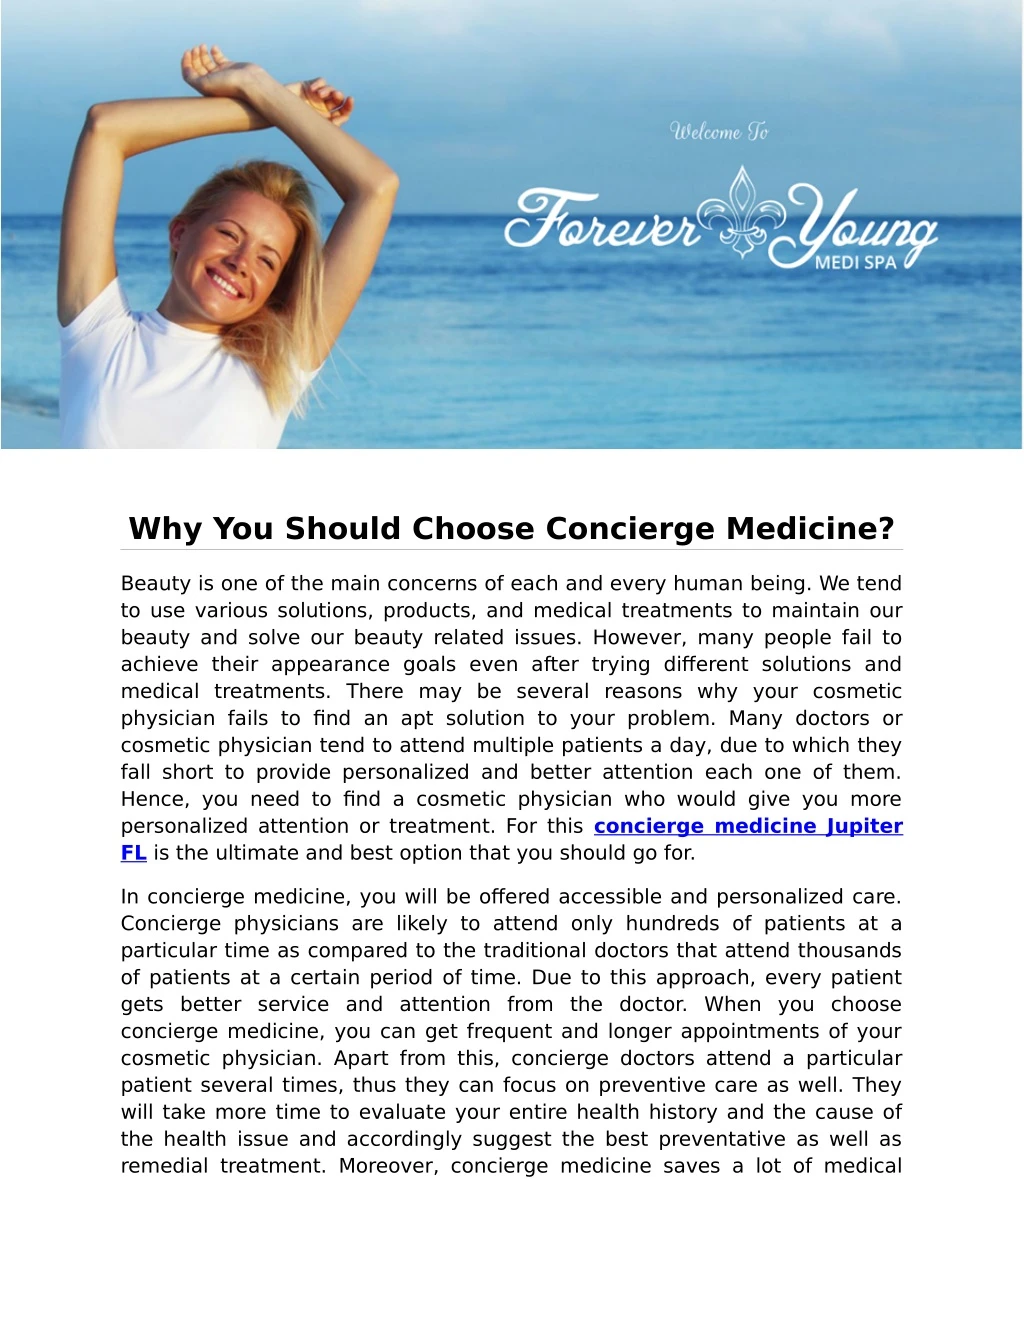 why you should choose concierge medicine